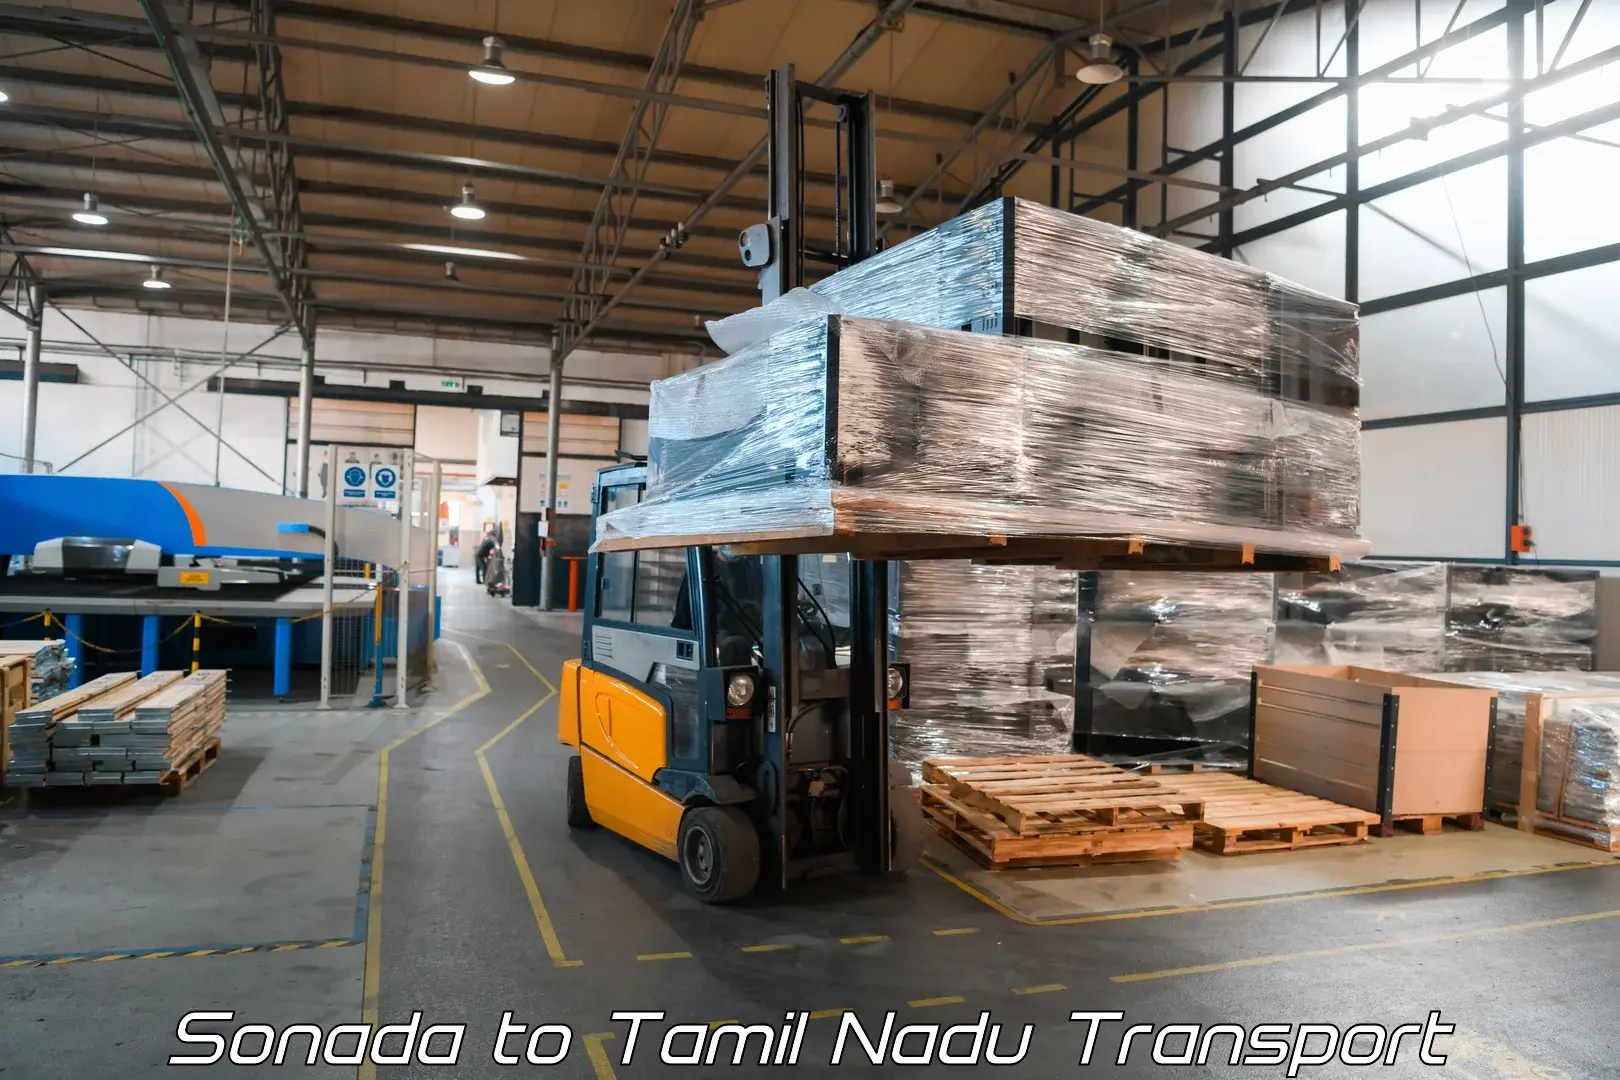 Transport in sharing Sonada to Tamil Nadu